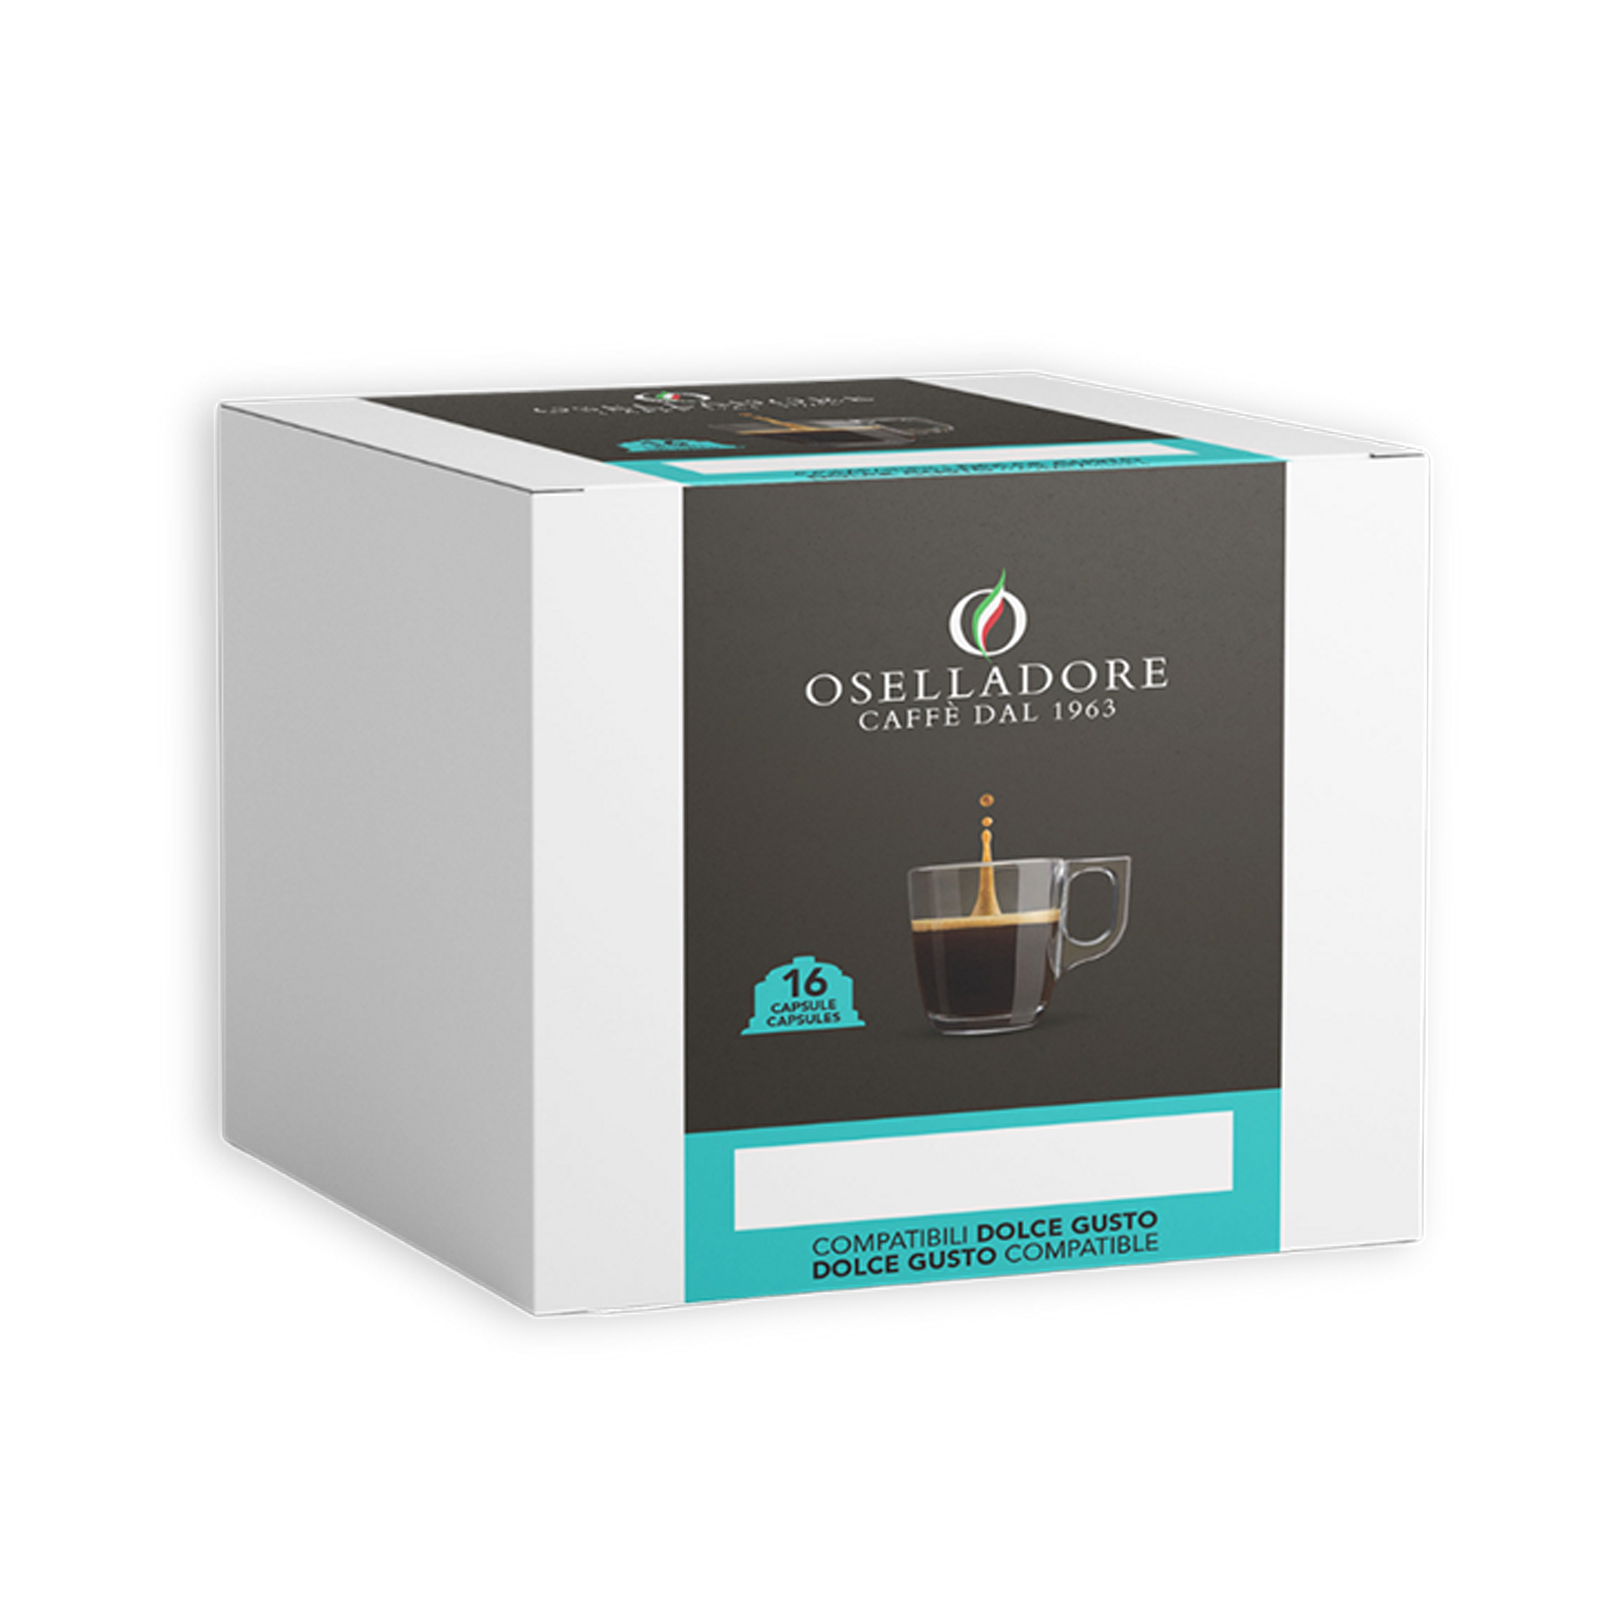 Confezione “CAFFÈ”
Cliente Oselladore